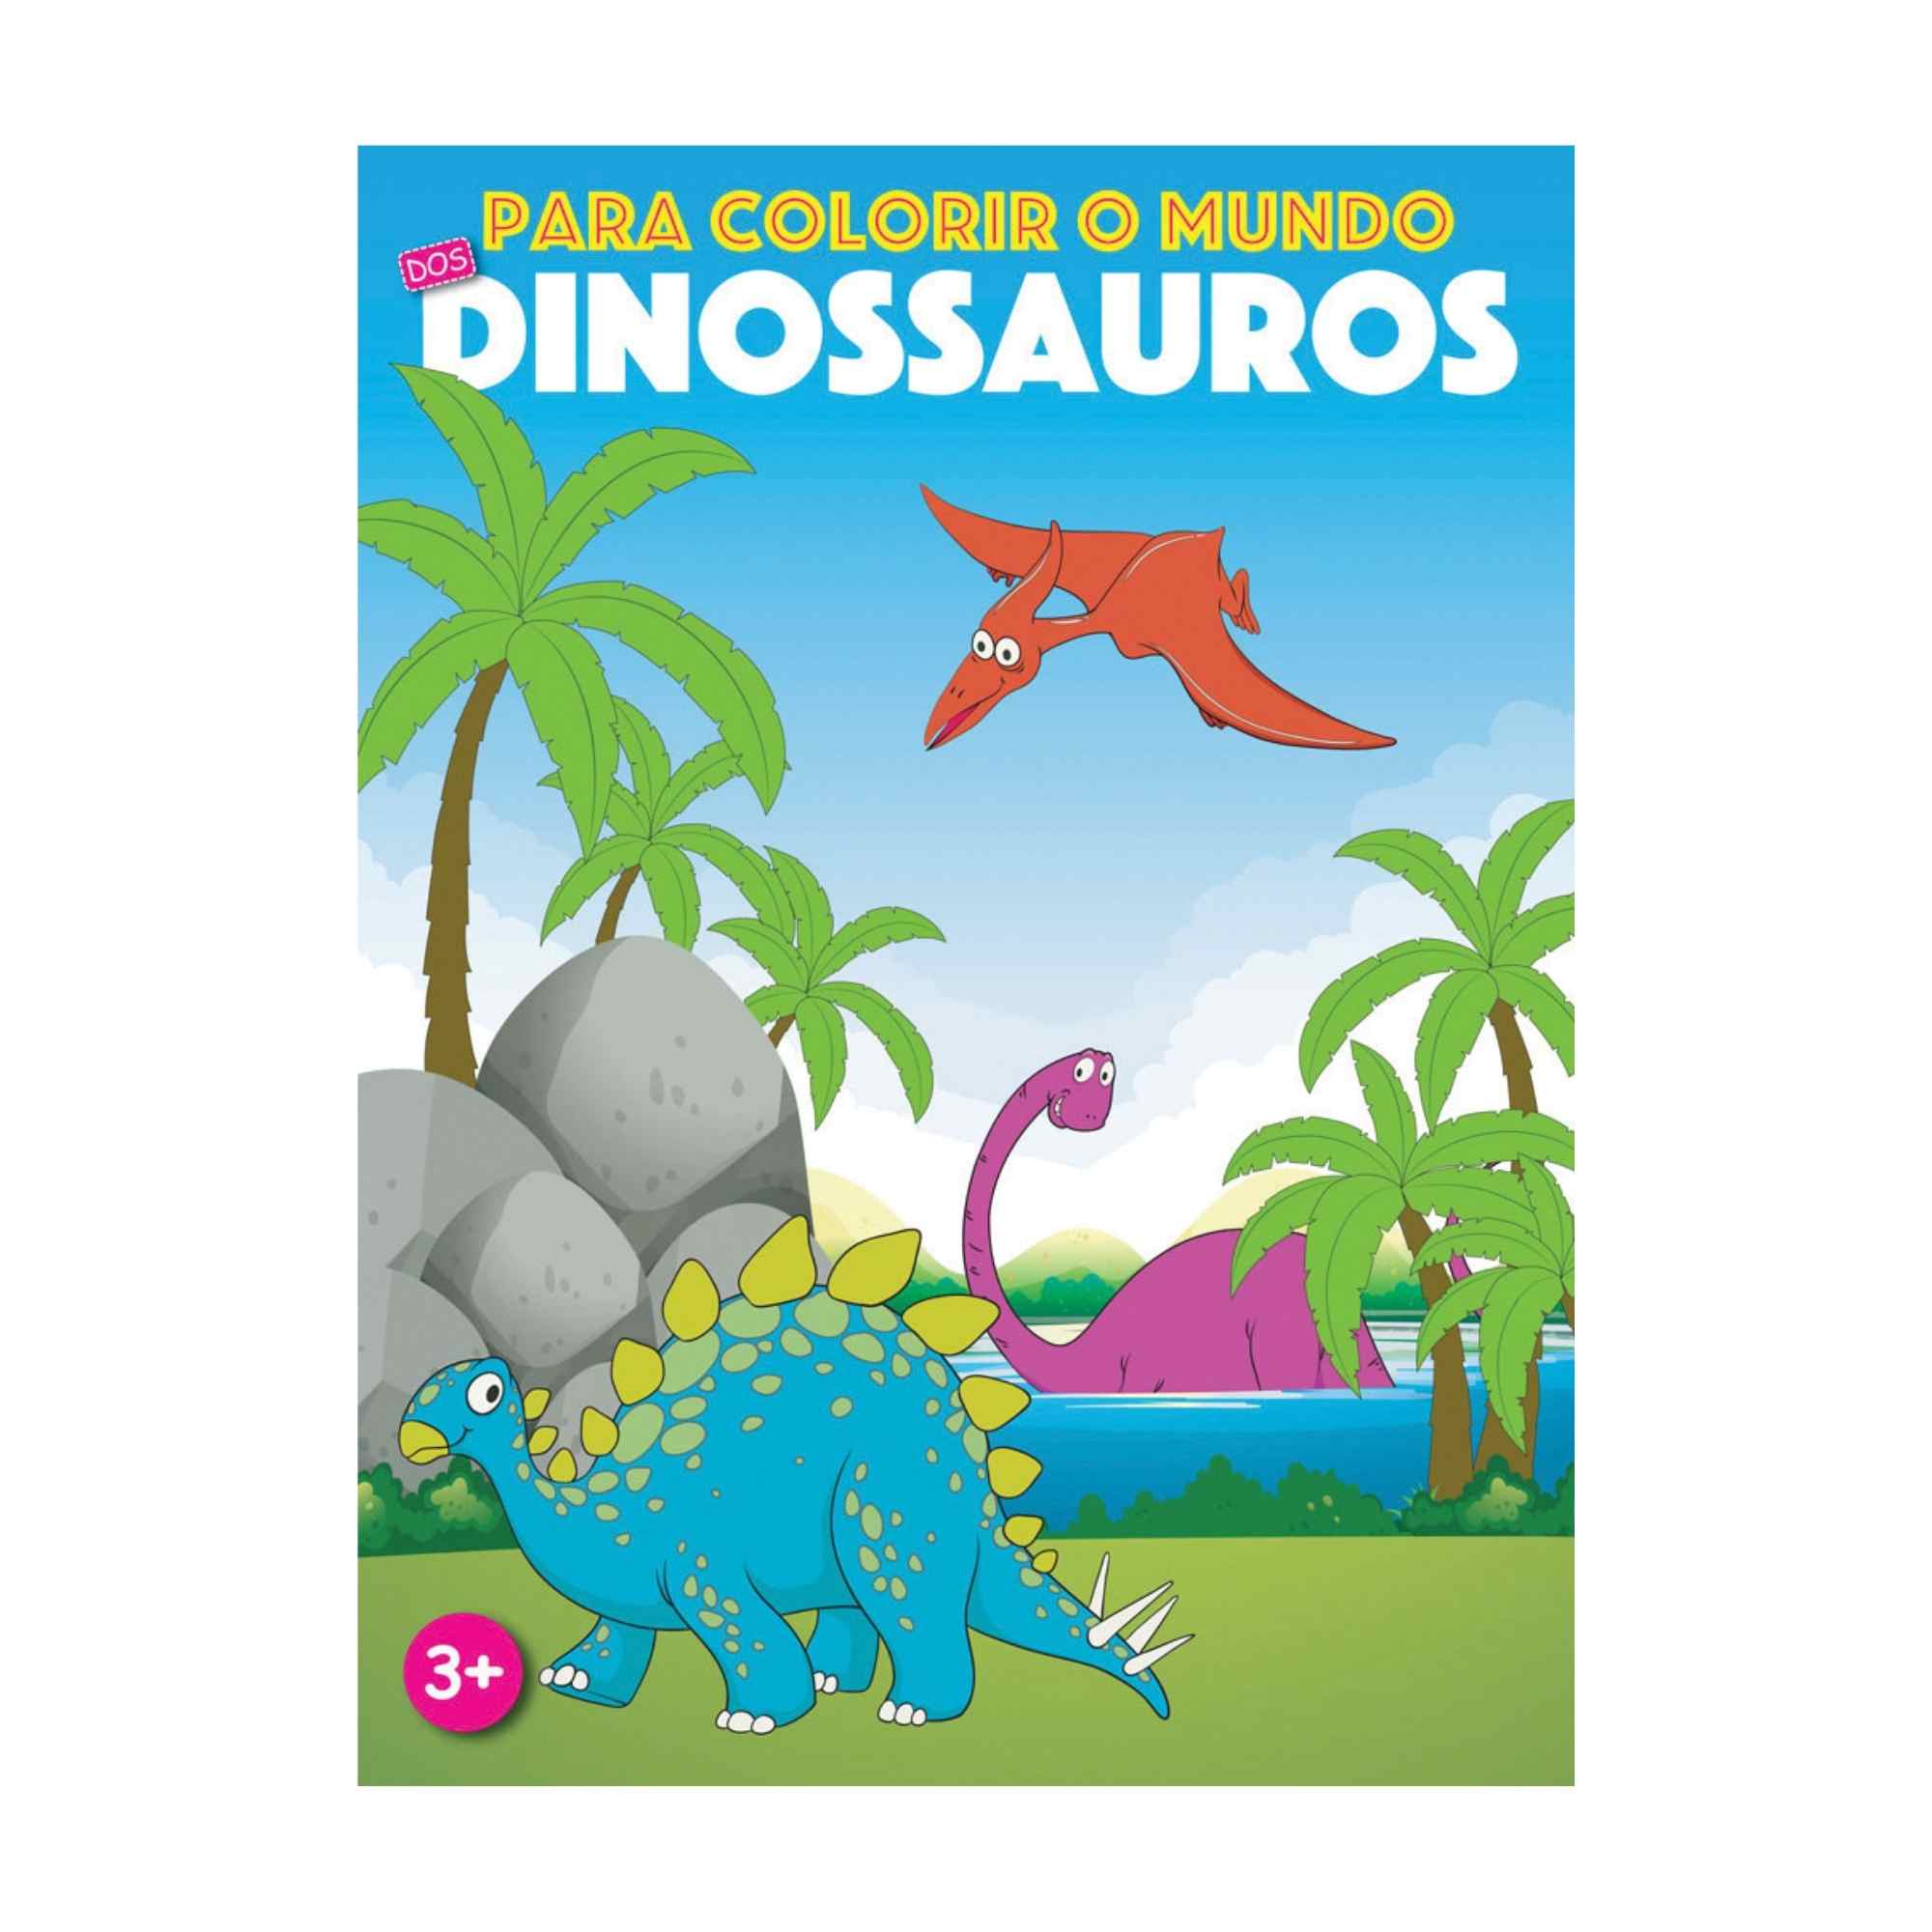 Dinossauros PARA COLORIR MUNDO - Edição 0001